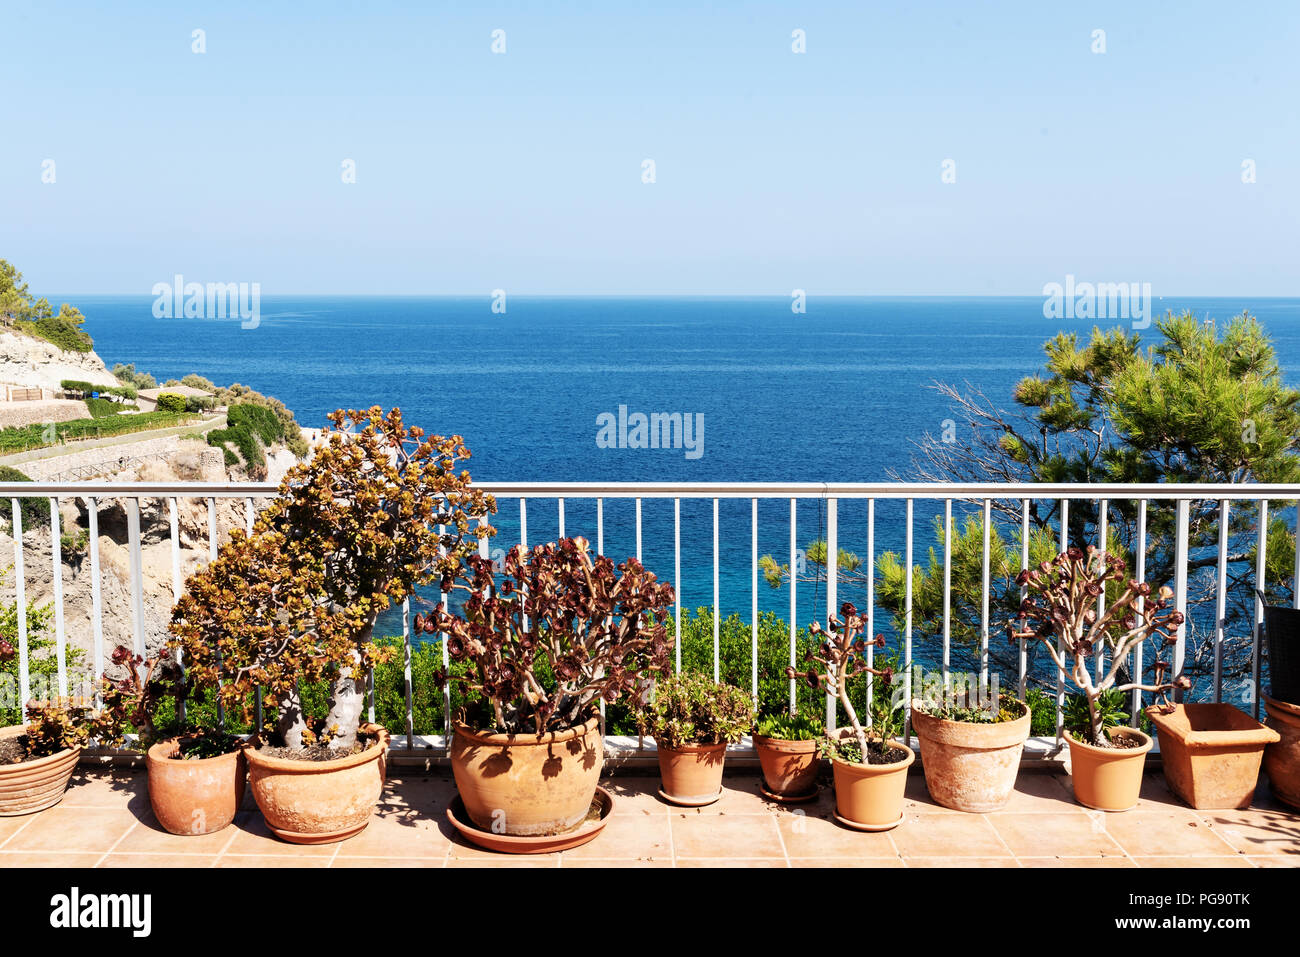 Plantas pottet en el patio contra el azul del cielo y del mar Foto de stock